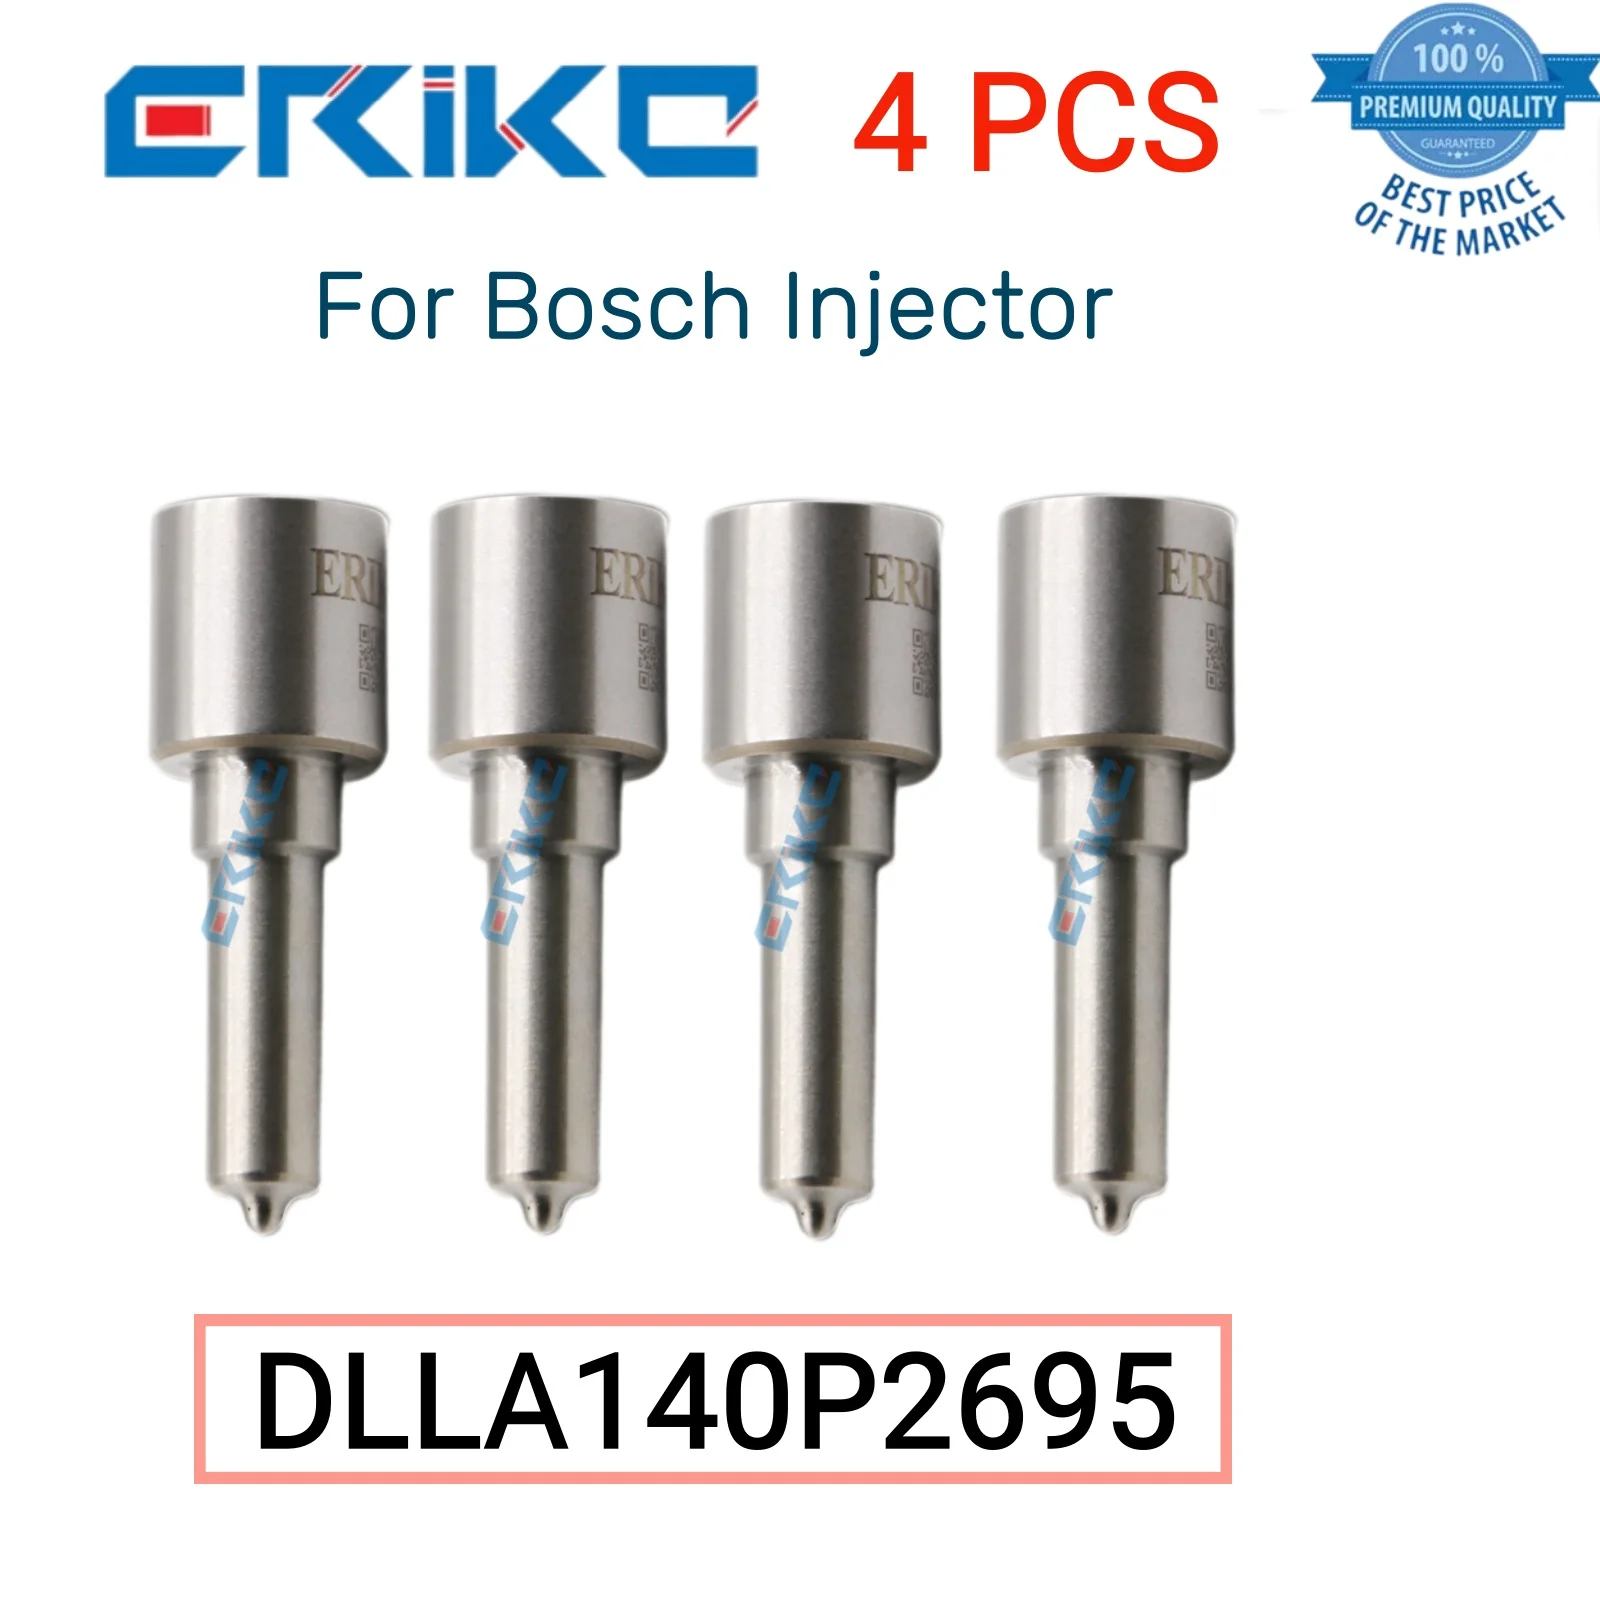 

4 PCS DLLA140P2695 Original Common Rail Nozzle DLLA 140 P 2695 Industry Spray Nozzle DLLA 140P2695 for Bosch Injector